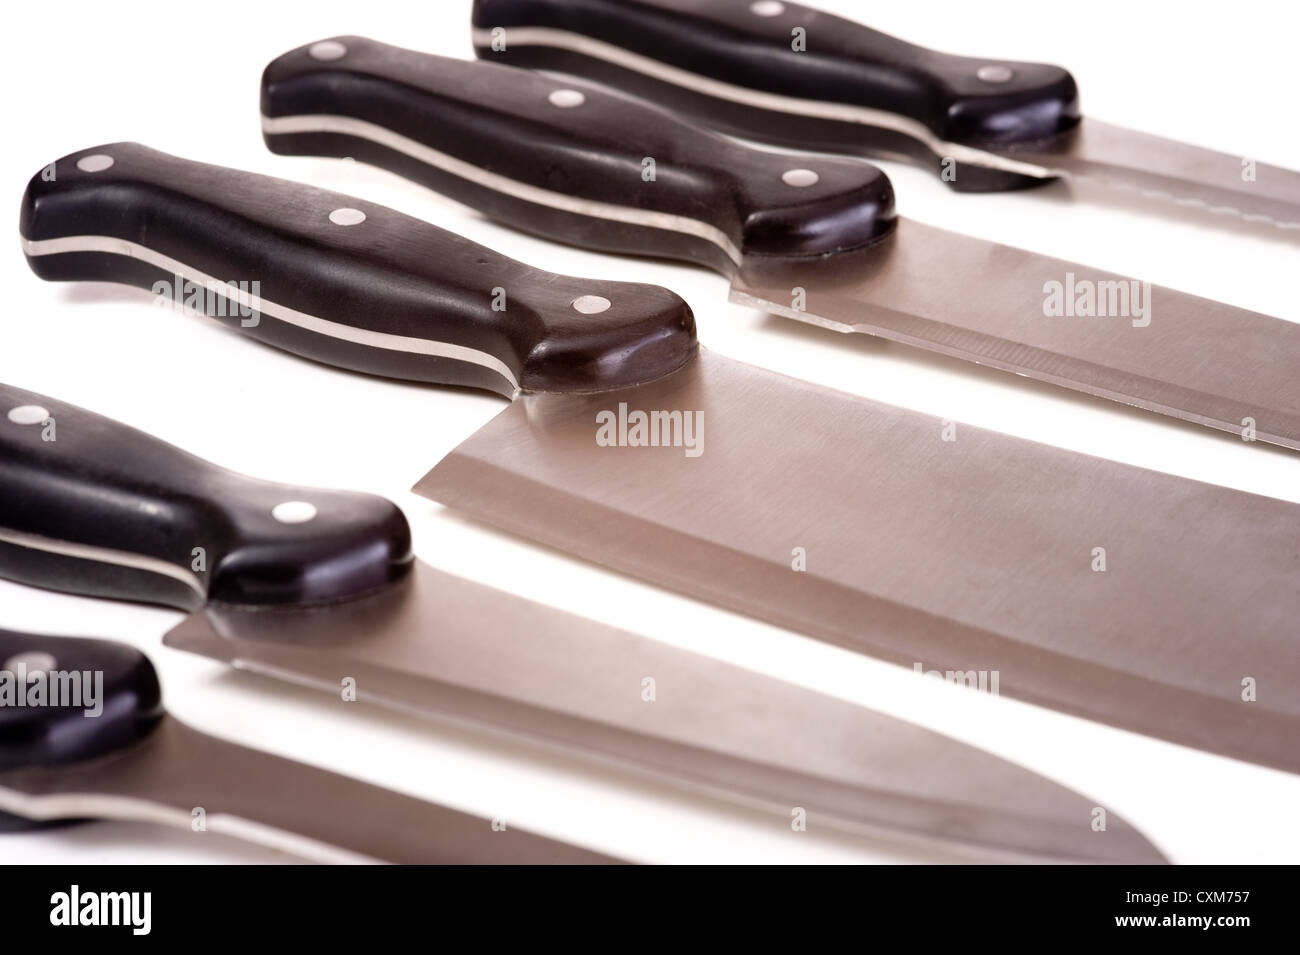 Un set di professional coltelli chef su sfondo bianco Foto Stock